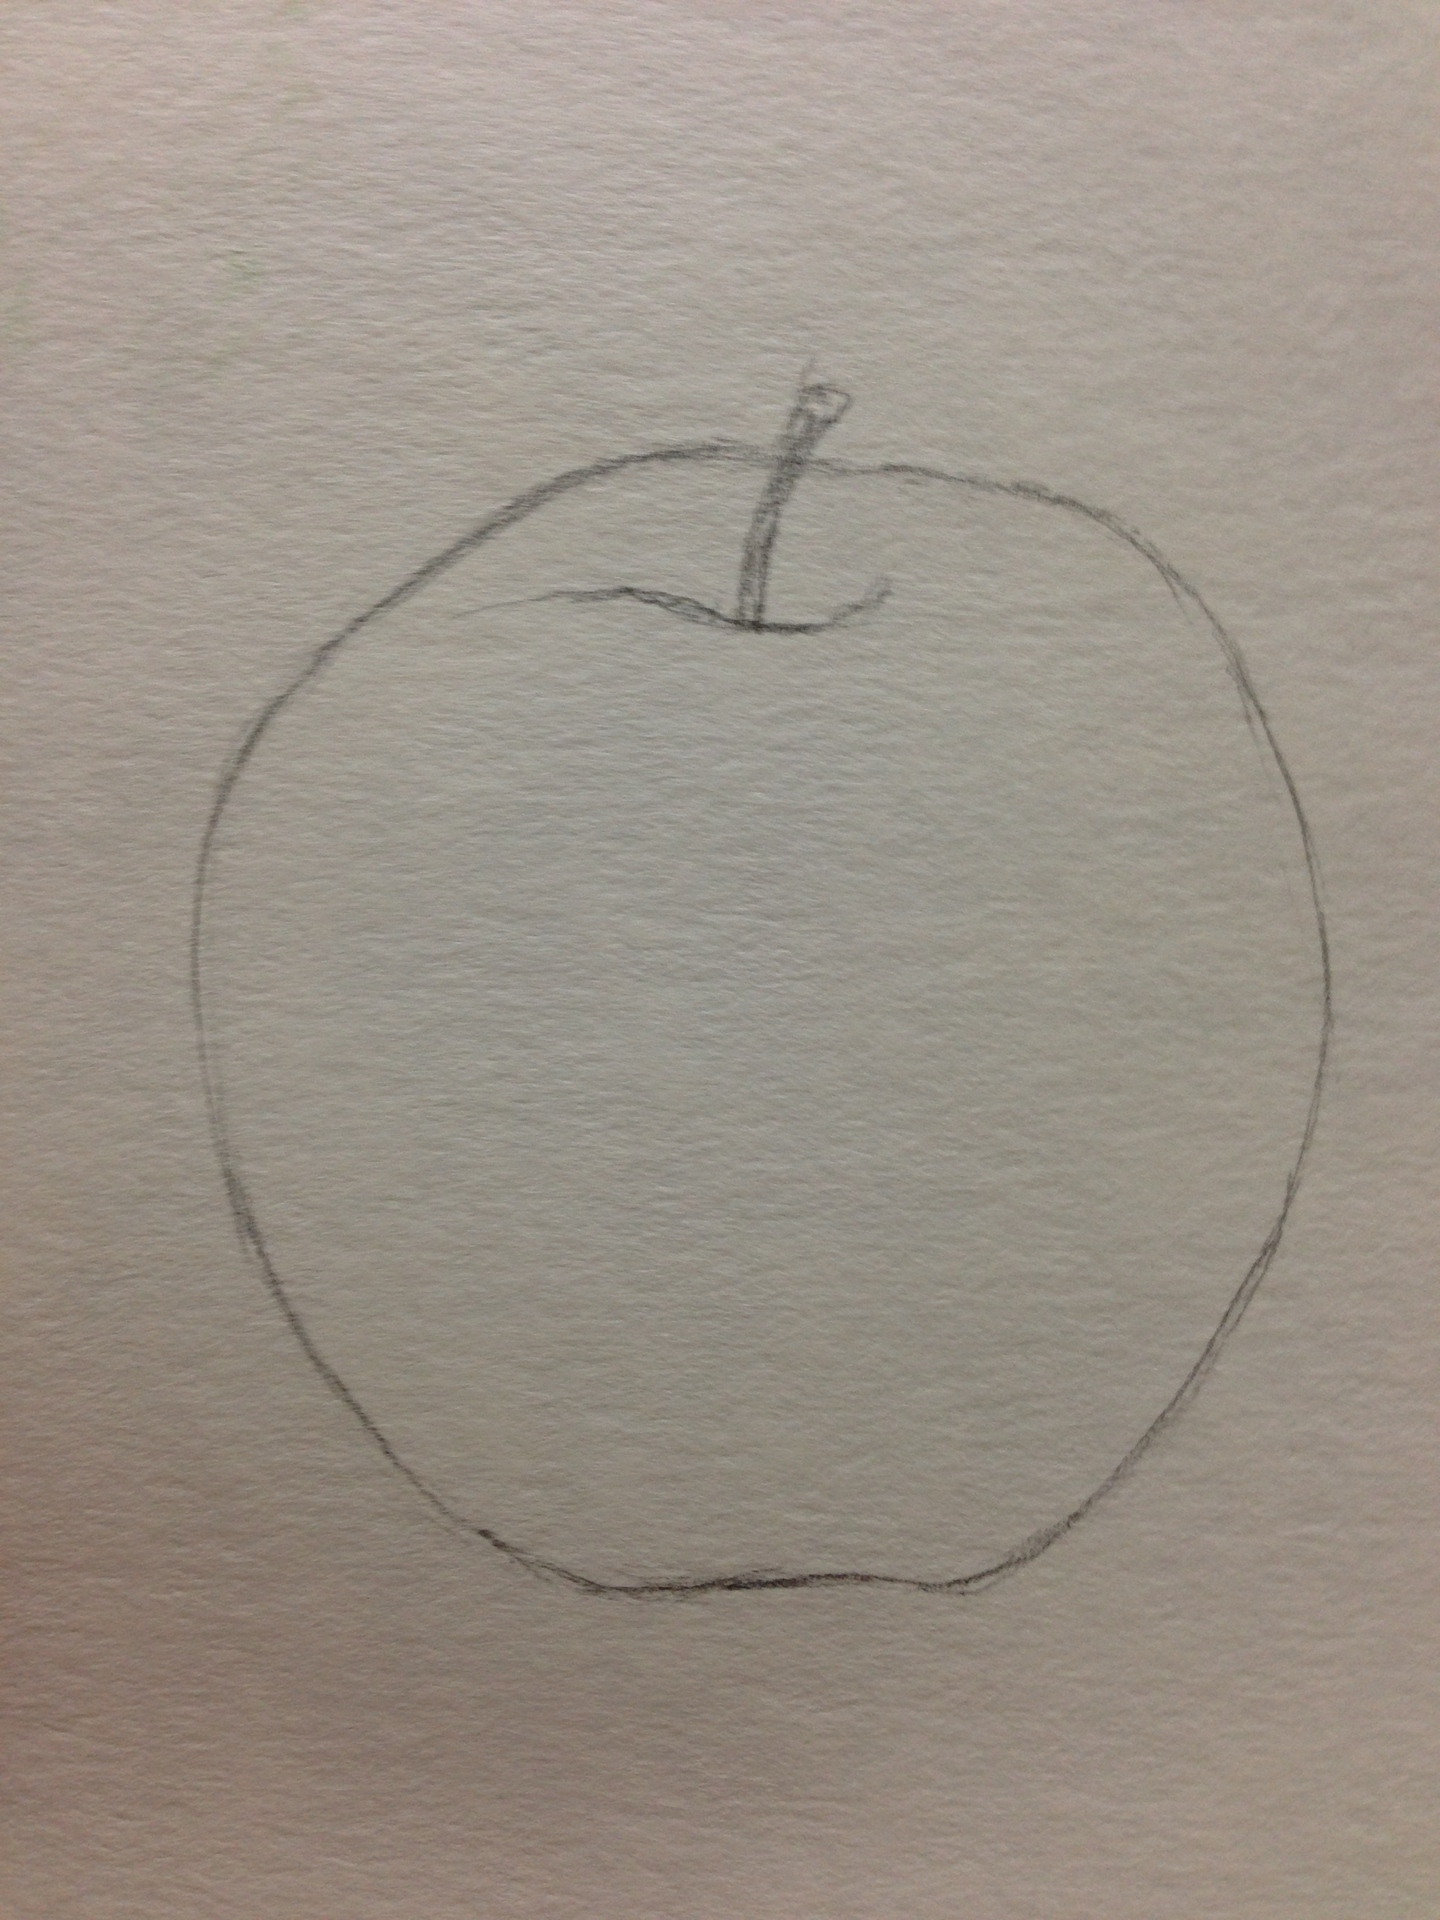 りんごの描き方 水彩画 前編 S S絵画教室